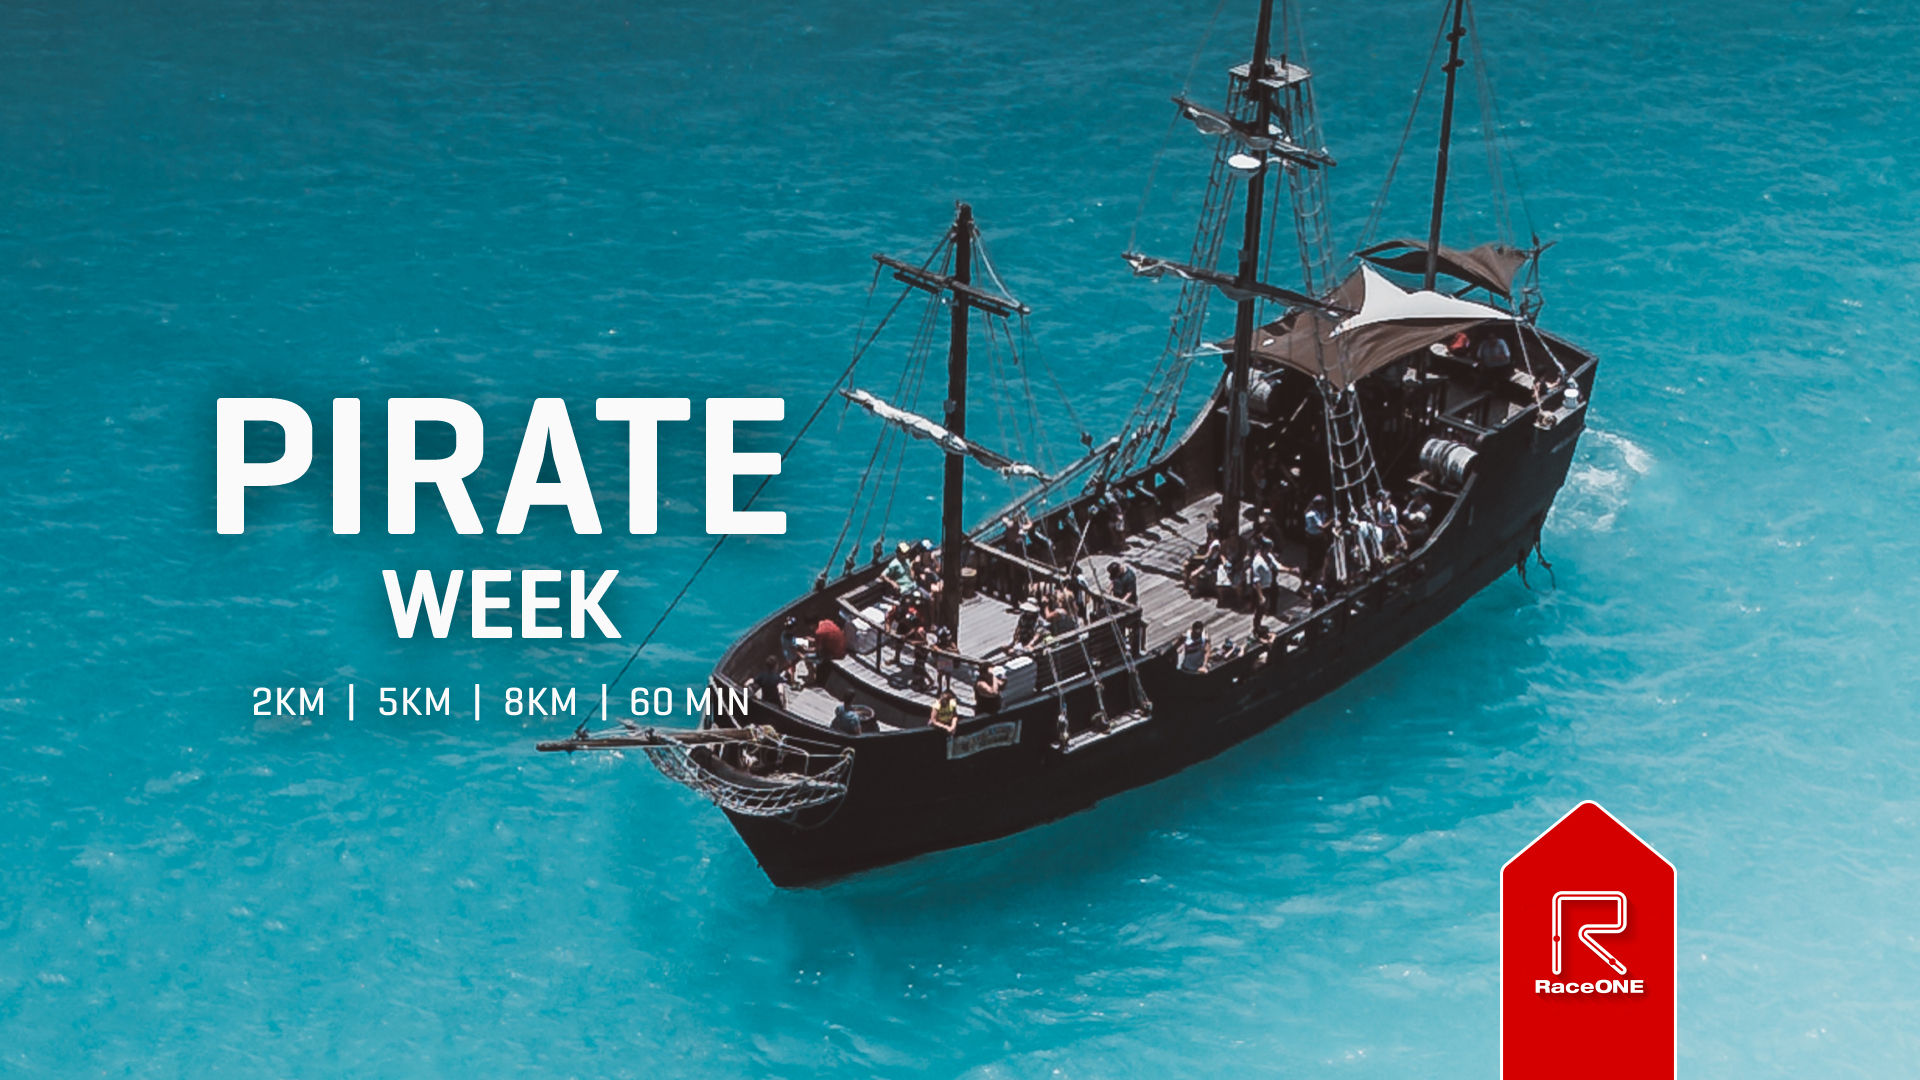 Pirate Week - 8km